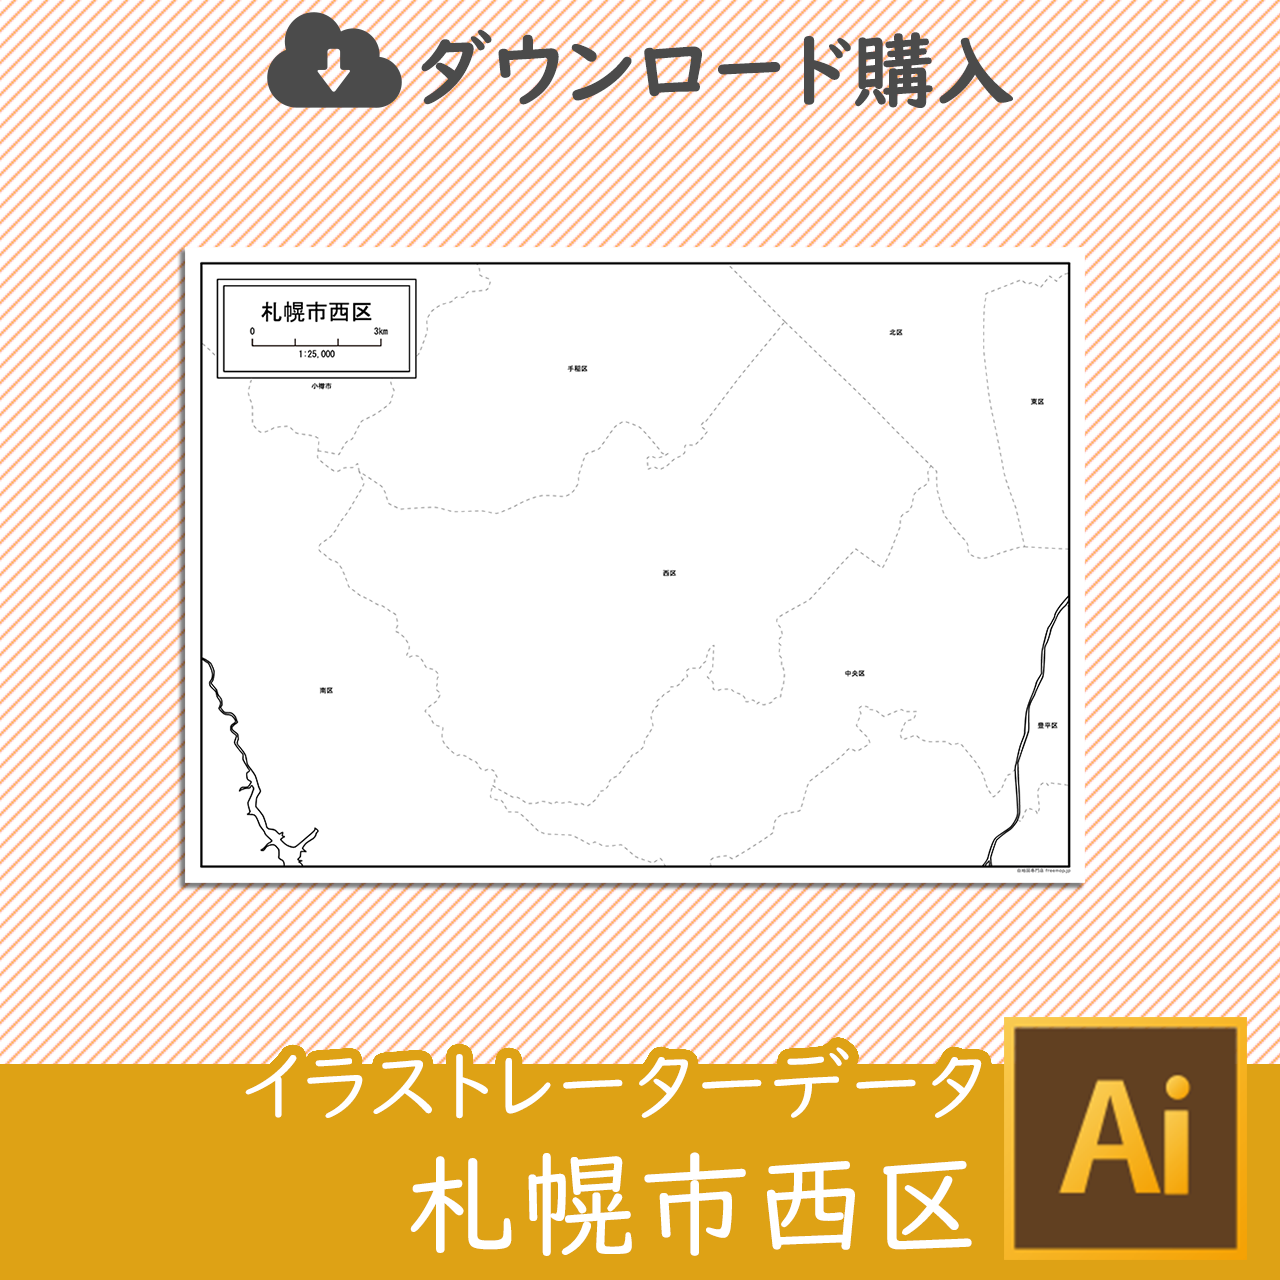 札幌市西区のaiデータのサムネイル画像